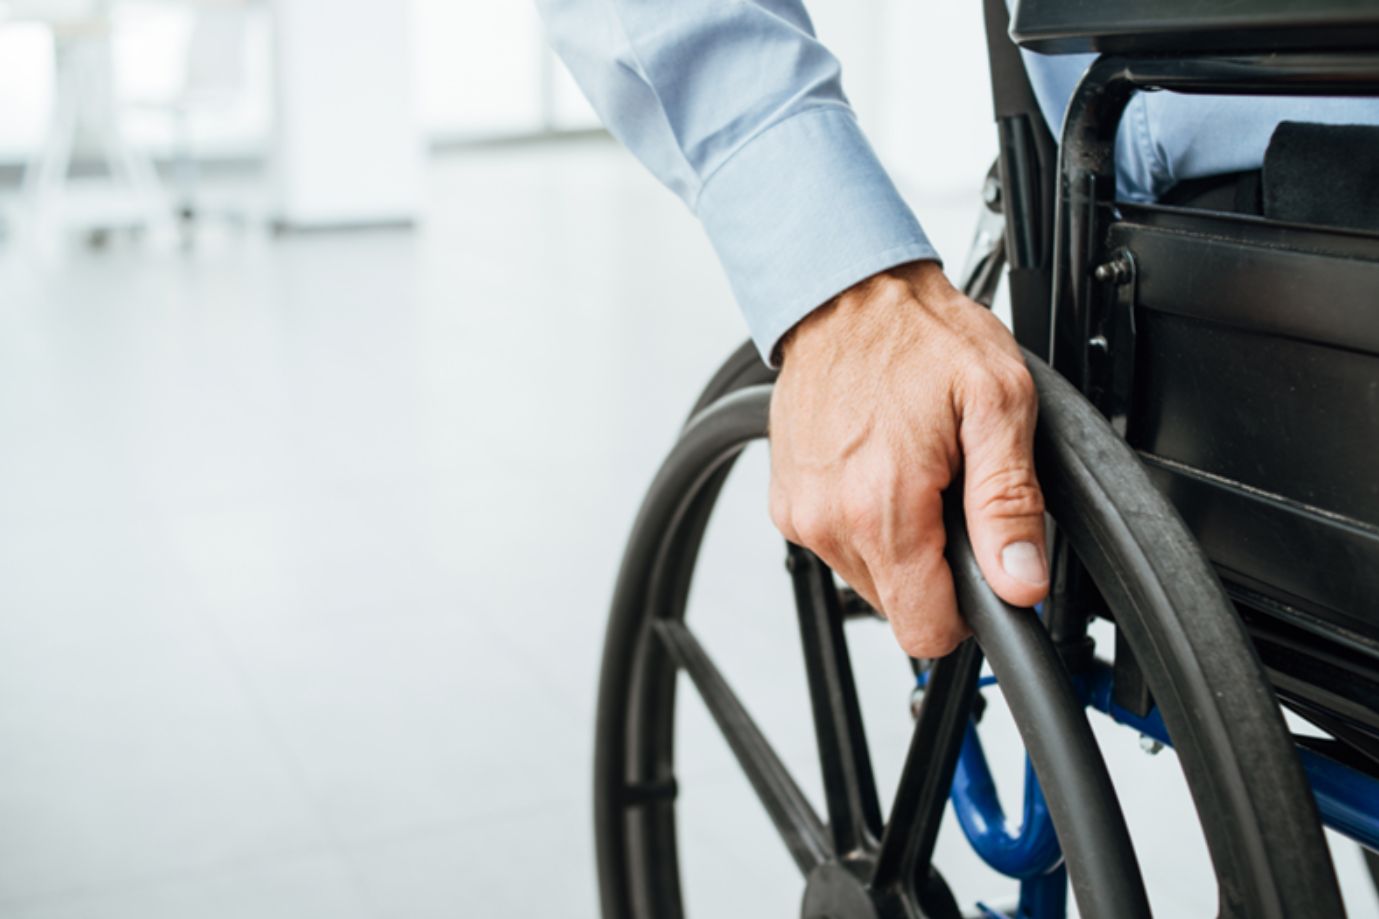 Wheelchair access through turnstiles